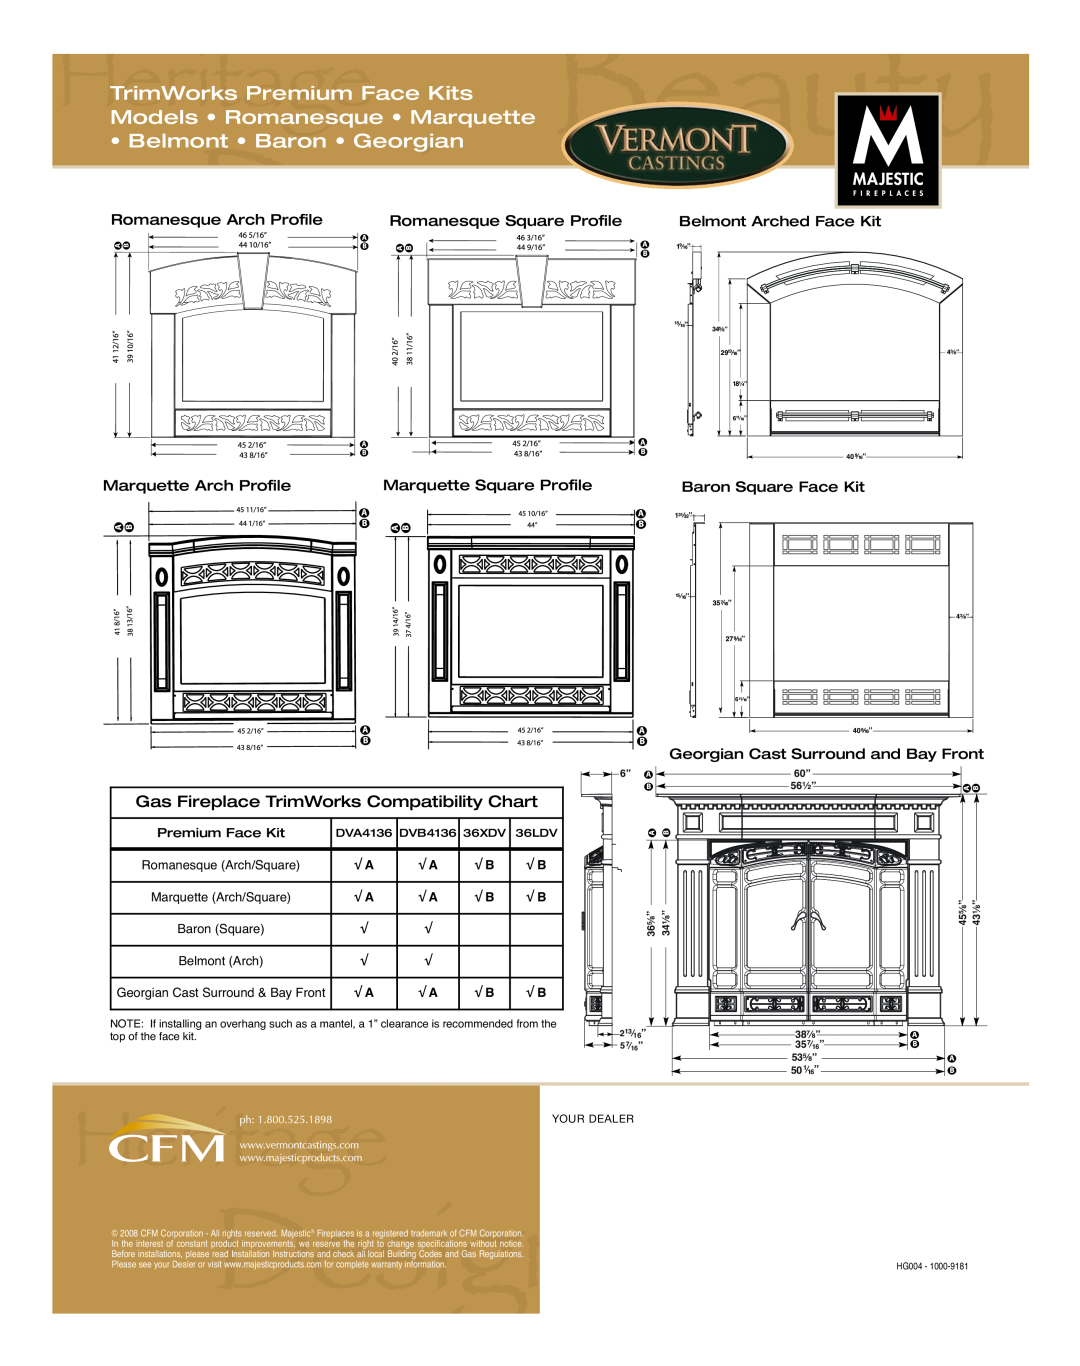 Vermont Casting HG004 manual 35d”16, TrimWorks Premium Face Kits, Models Romanesque Marquette, Belmont Baron Georgian 